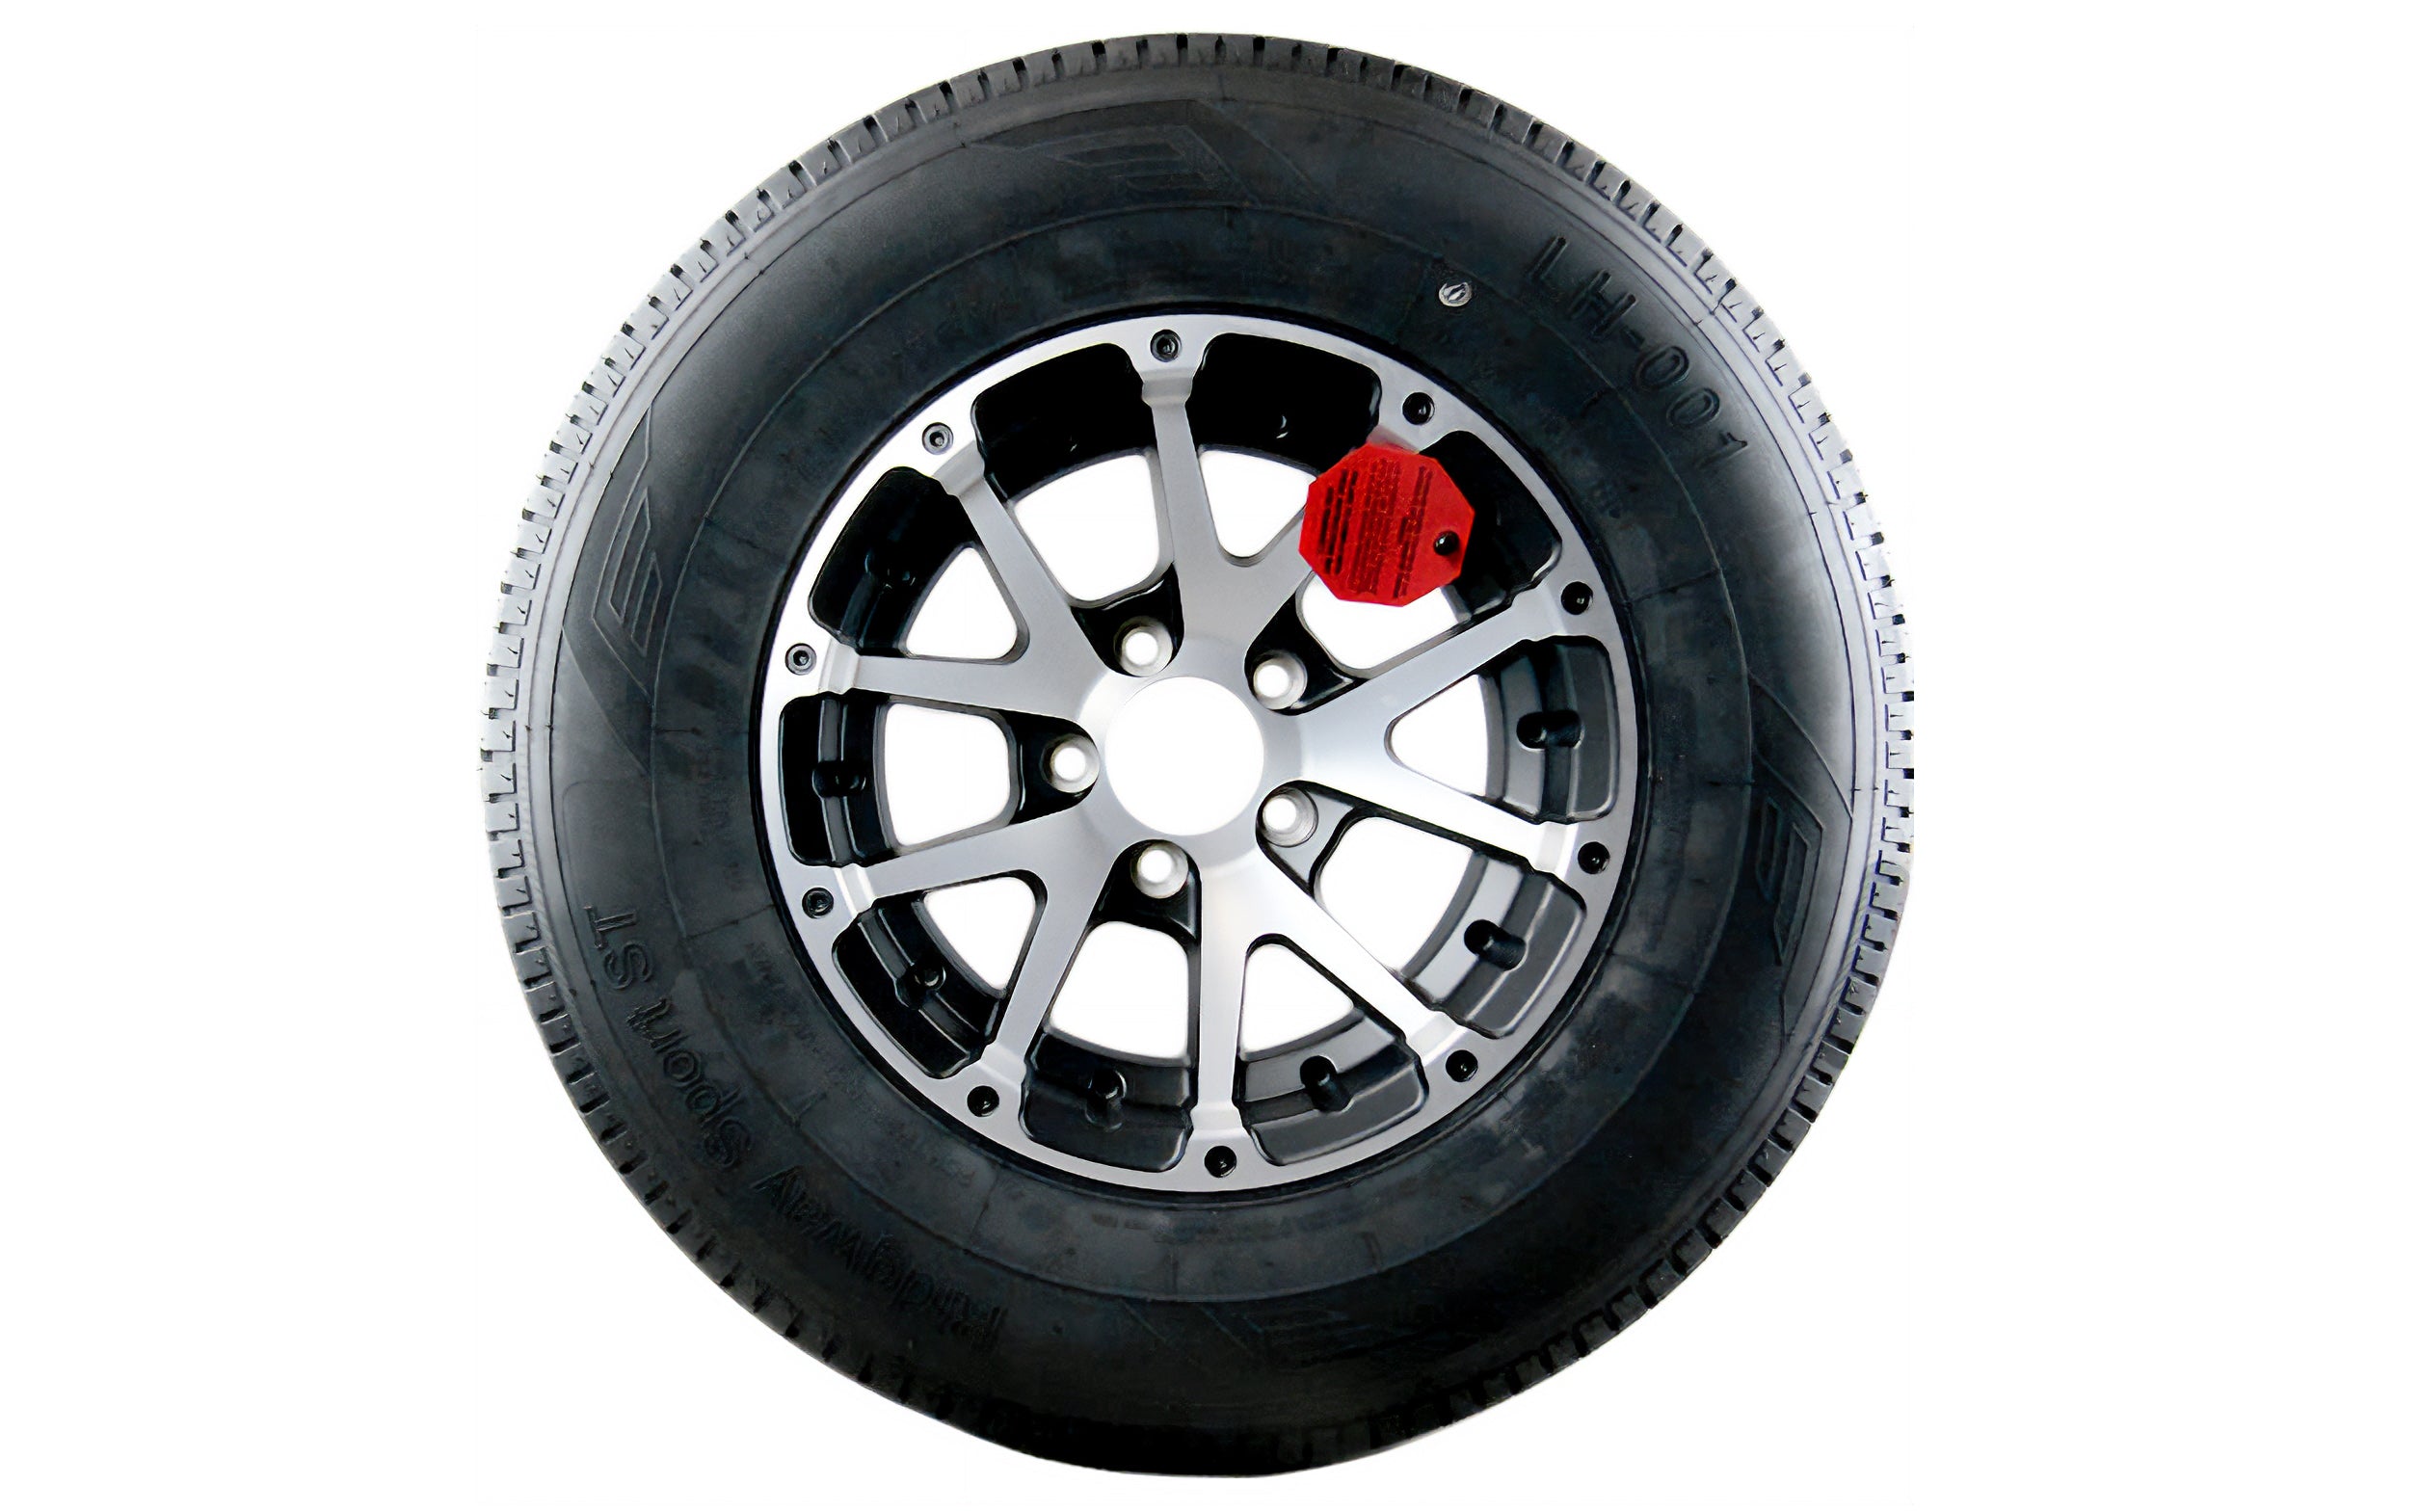 14" Snowflake Alloy Wheel & Tire